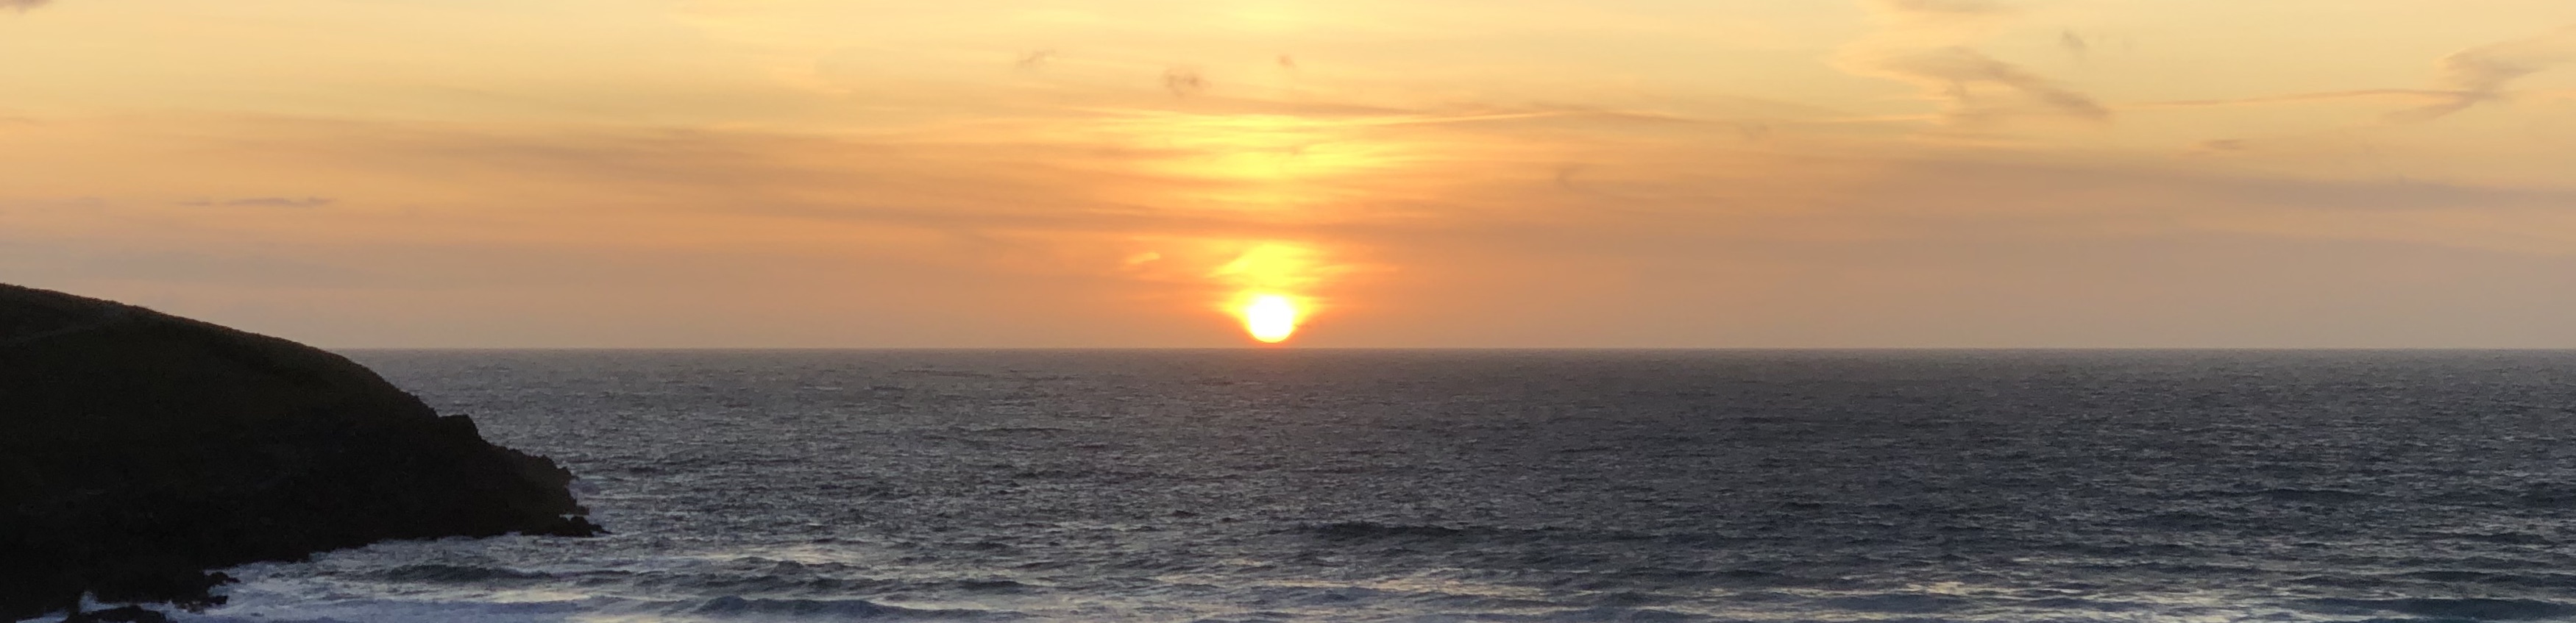 The sun setting over the sea